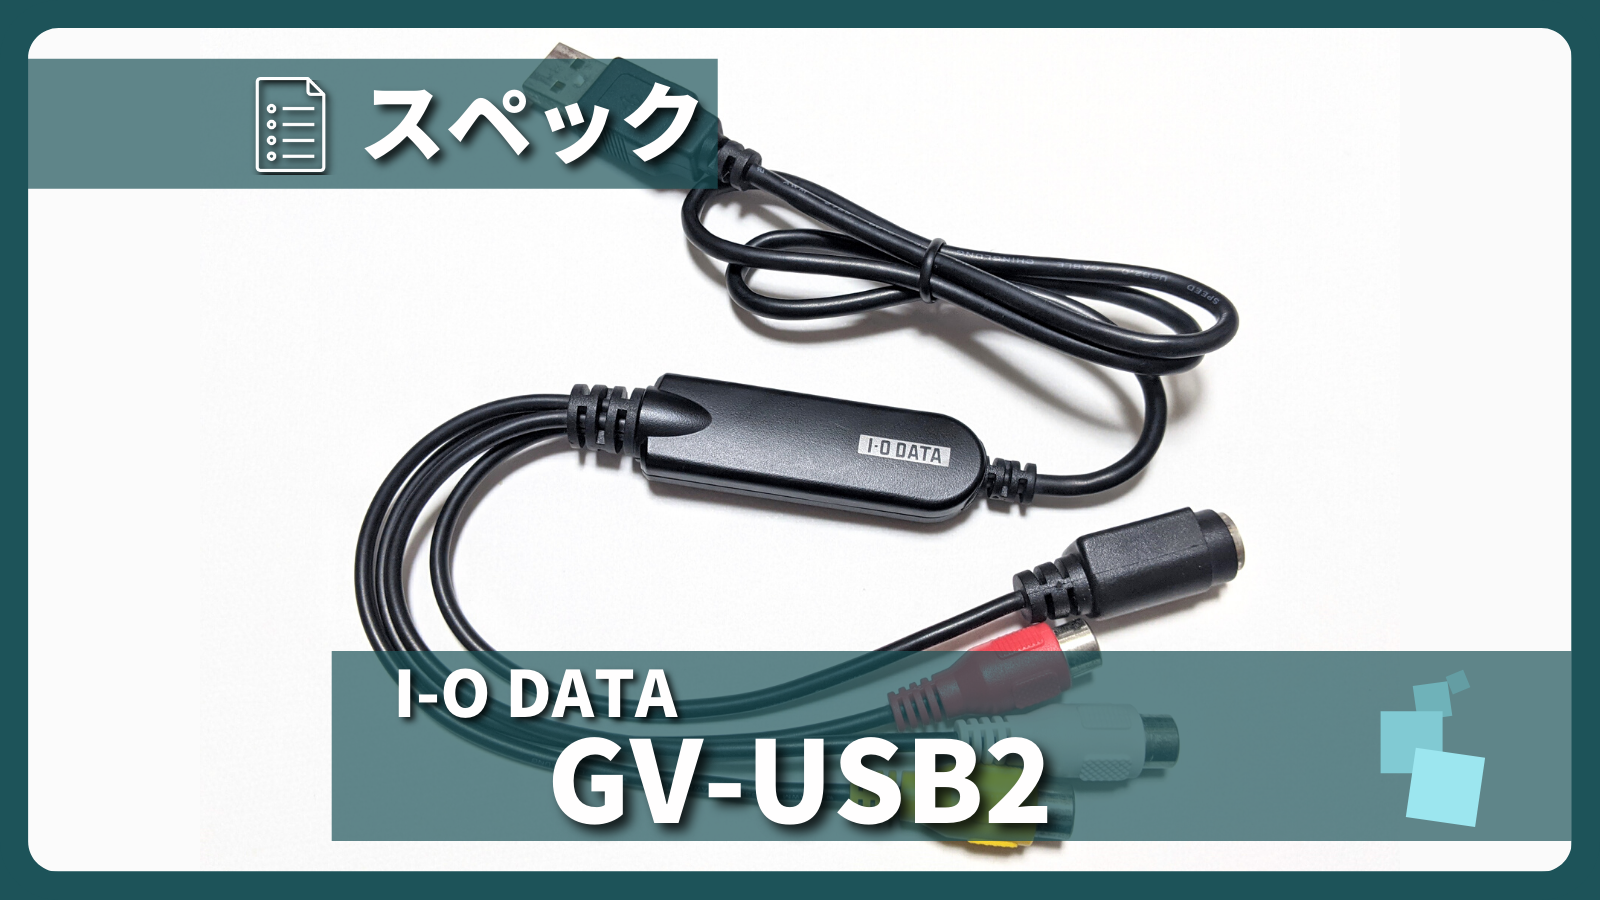 アイキャッチ画像・I-O DATA GV-USB2 スペック紹介